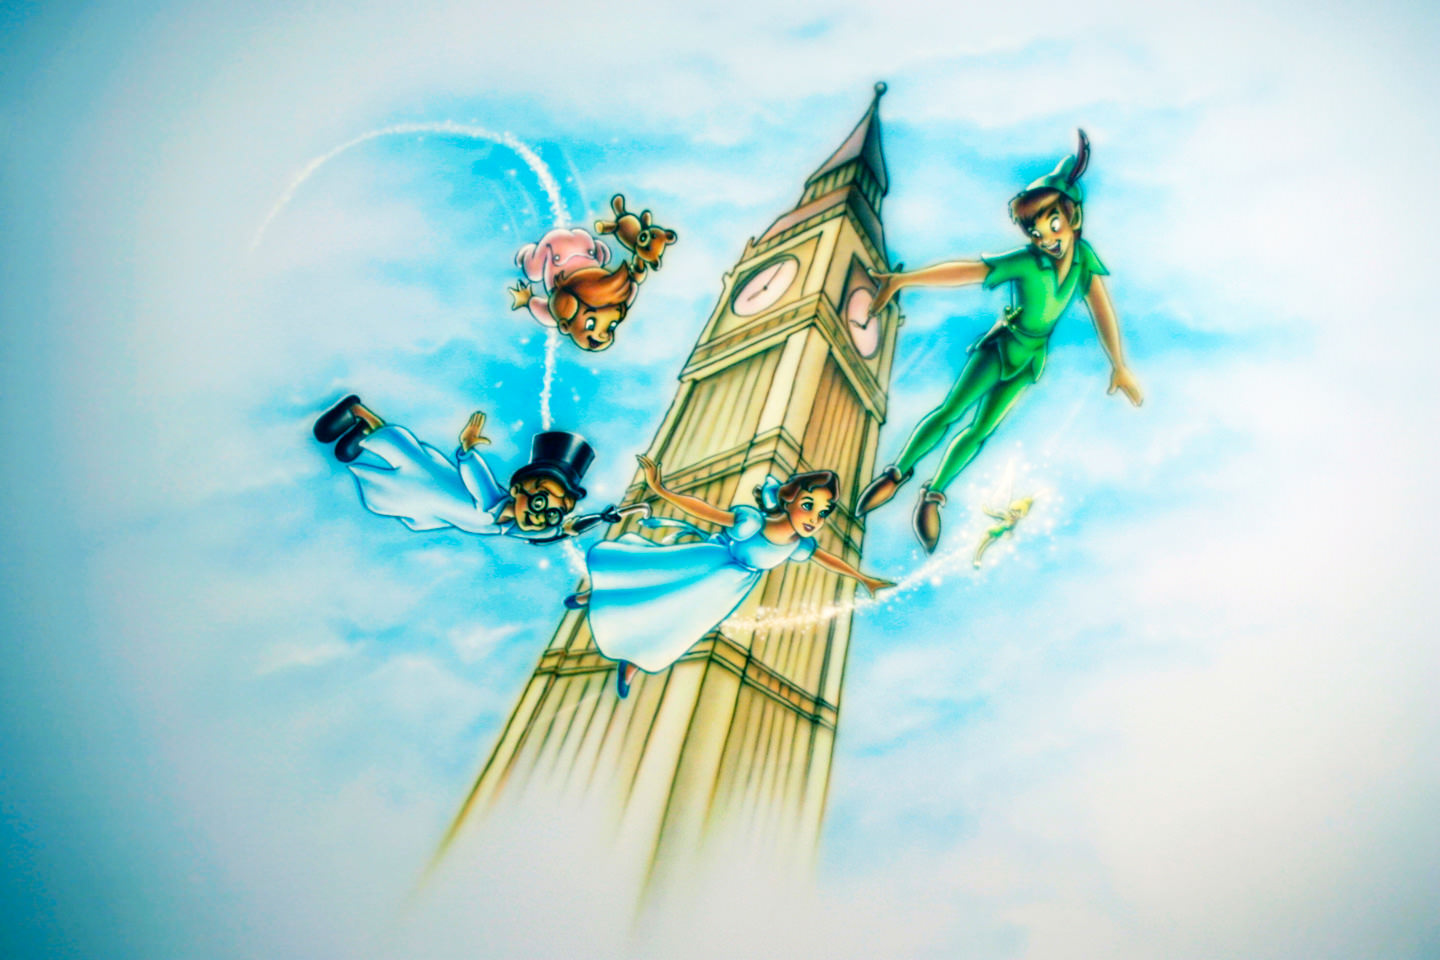 Muurschildering Peter Pan, Tinkerbell in kinderkamer met Big Ben